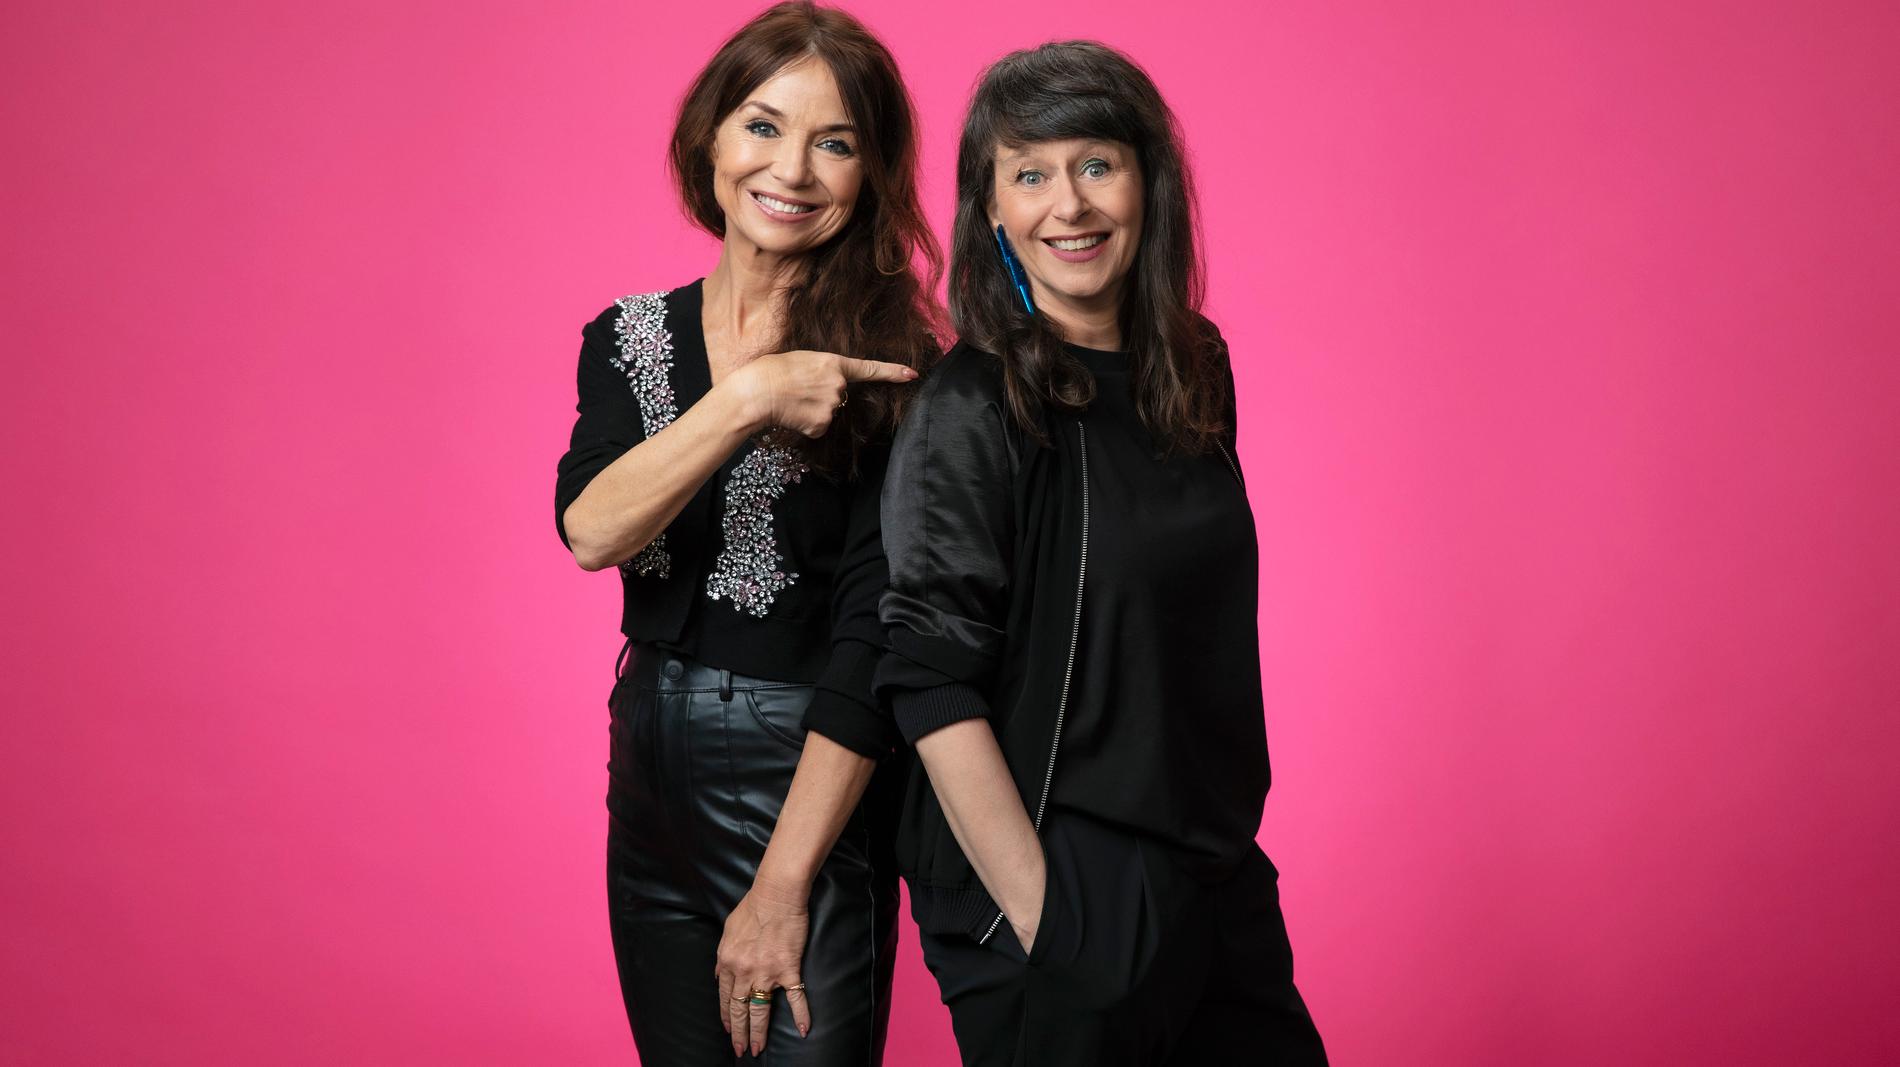 Annika Jankell och Anna Charlotta Gunnarson blir nya programledare för det legendariska radioprogrammet Melodikrysset i P4 med start 20 augusti.